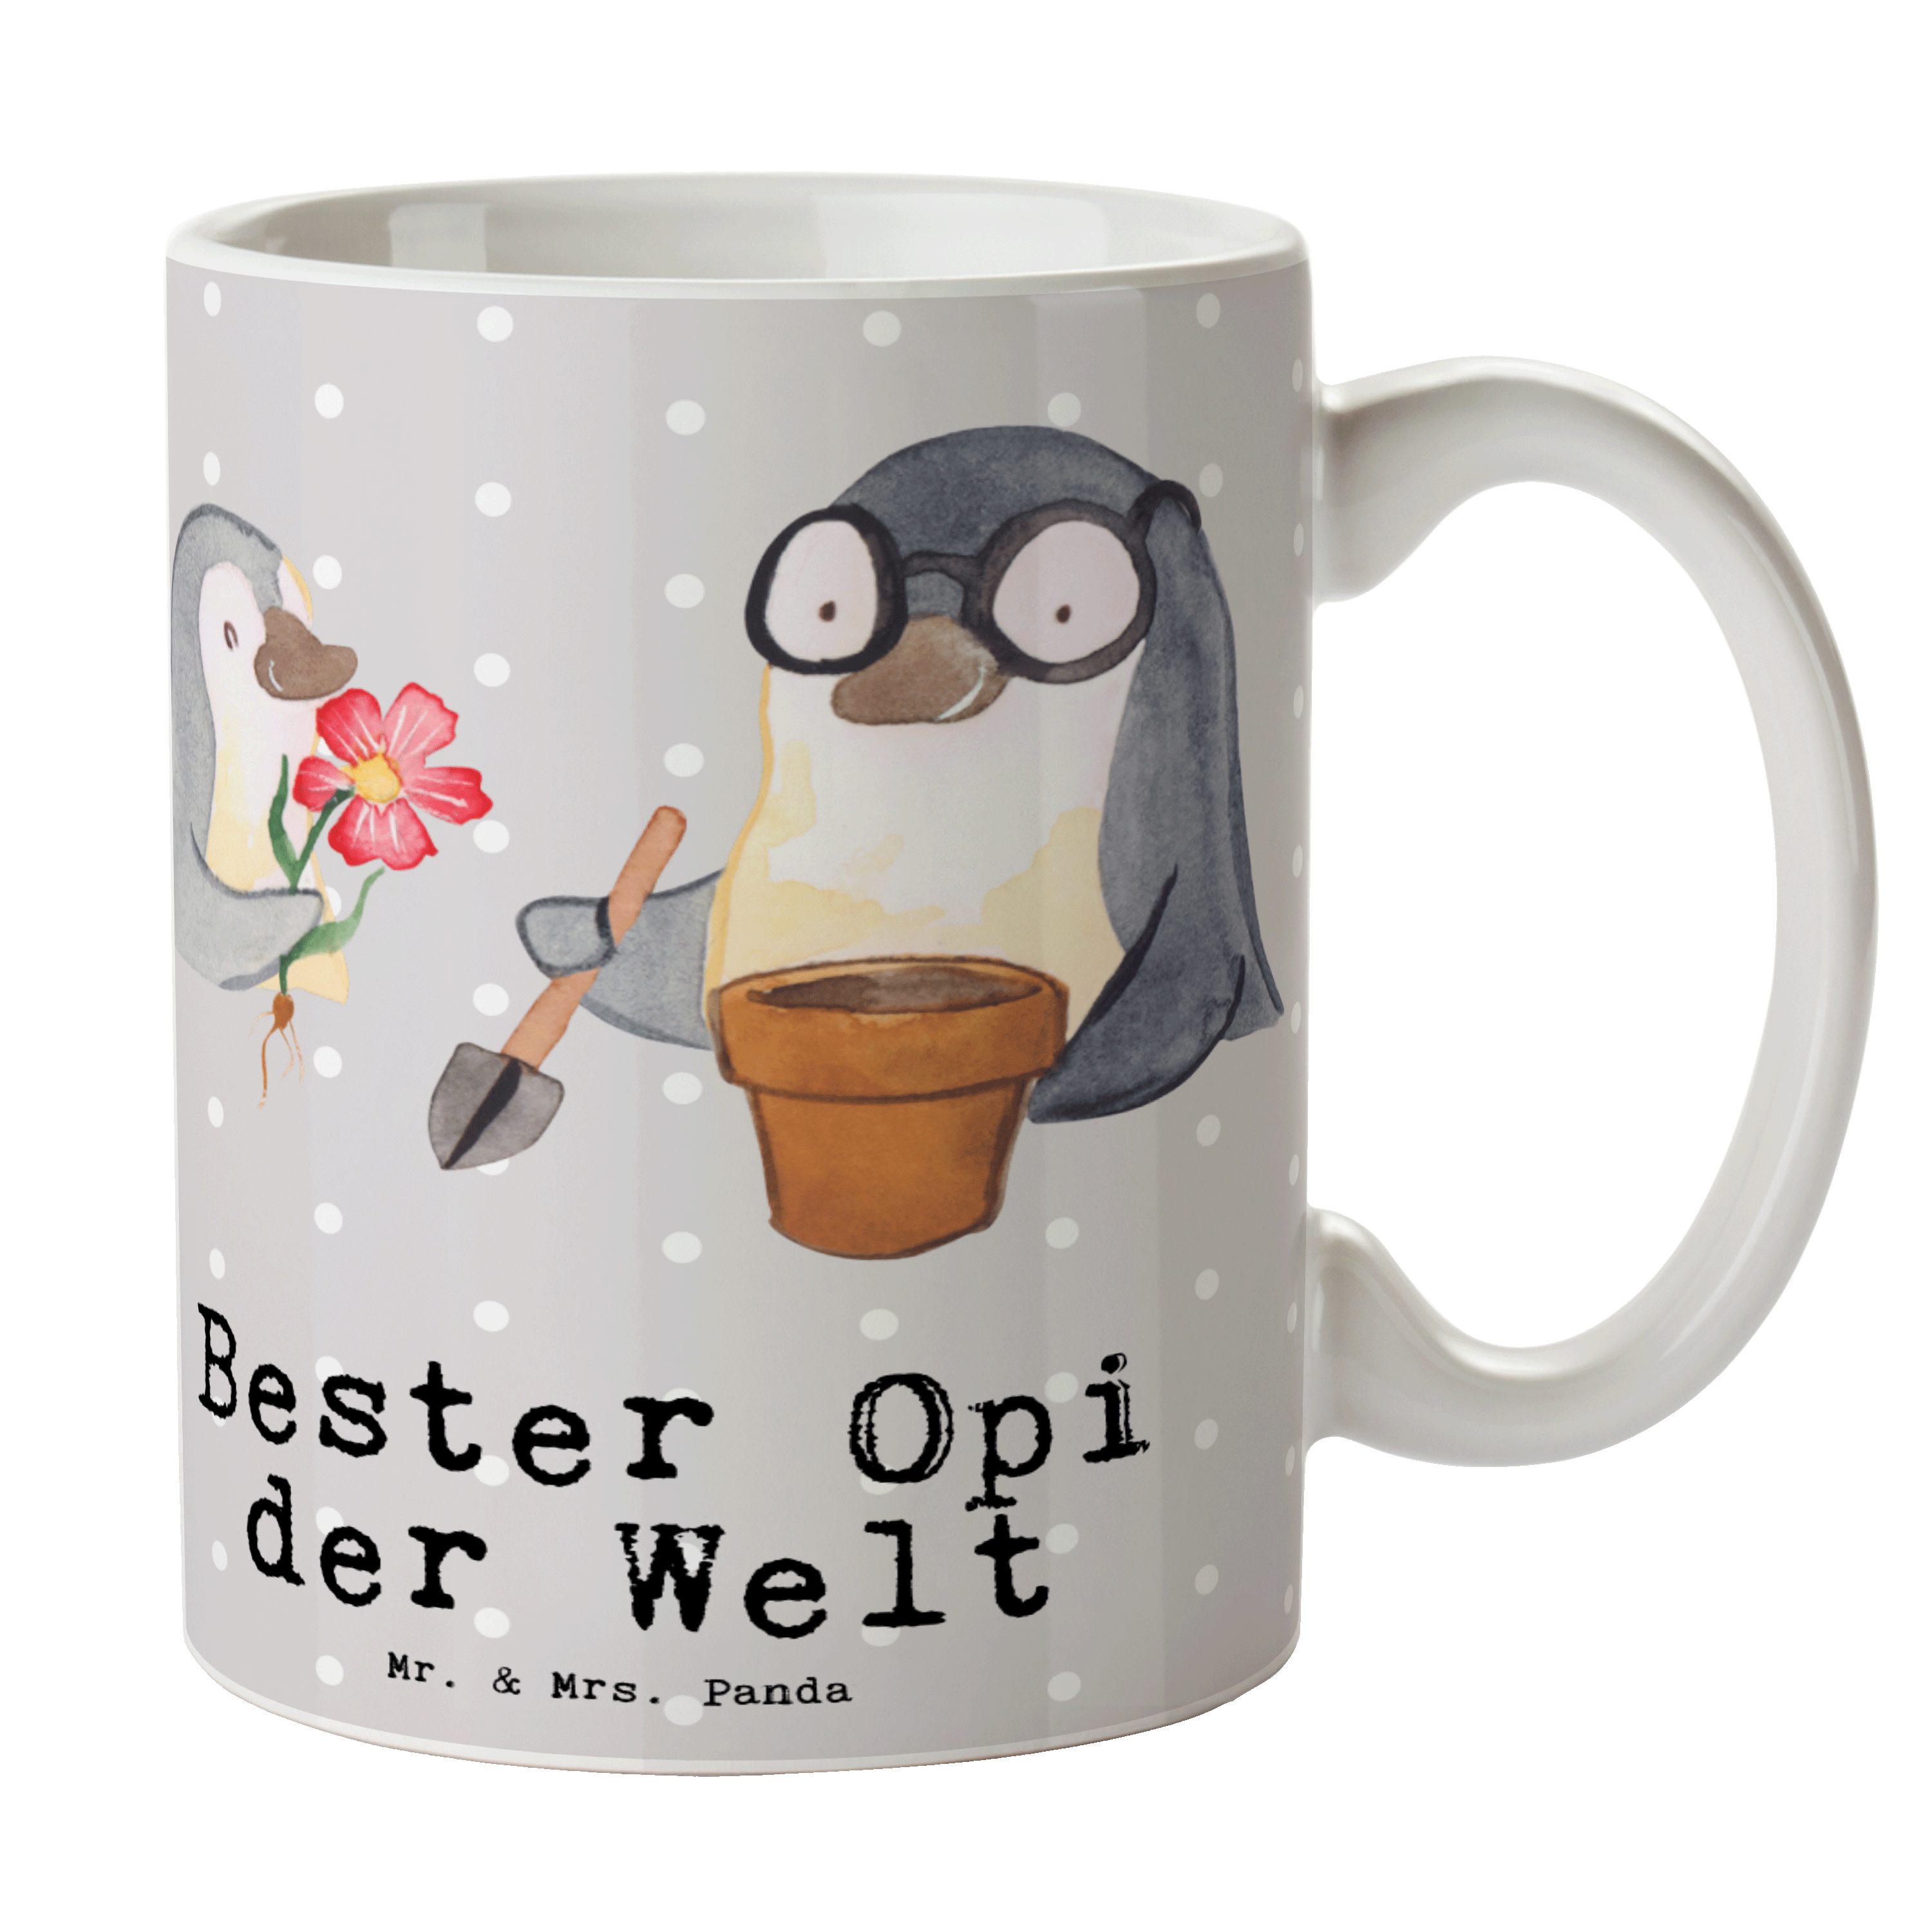 Mr. & Mrs. Panda Tasse Pinguin Bester Opi der Welt - Grau Pastell - Geschenk, Tasse Sprüche, Keramik